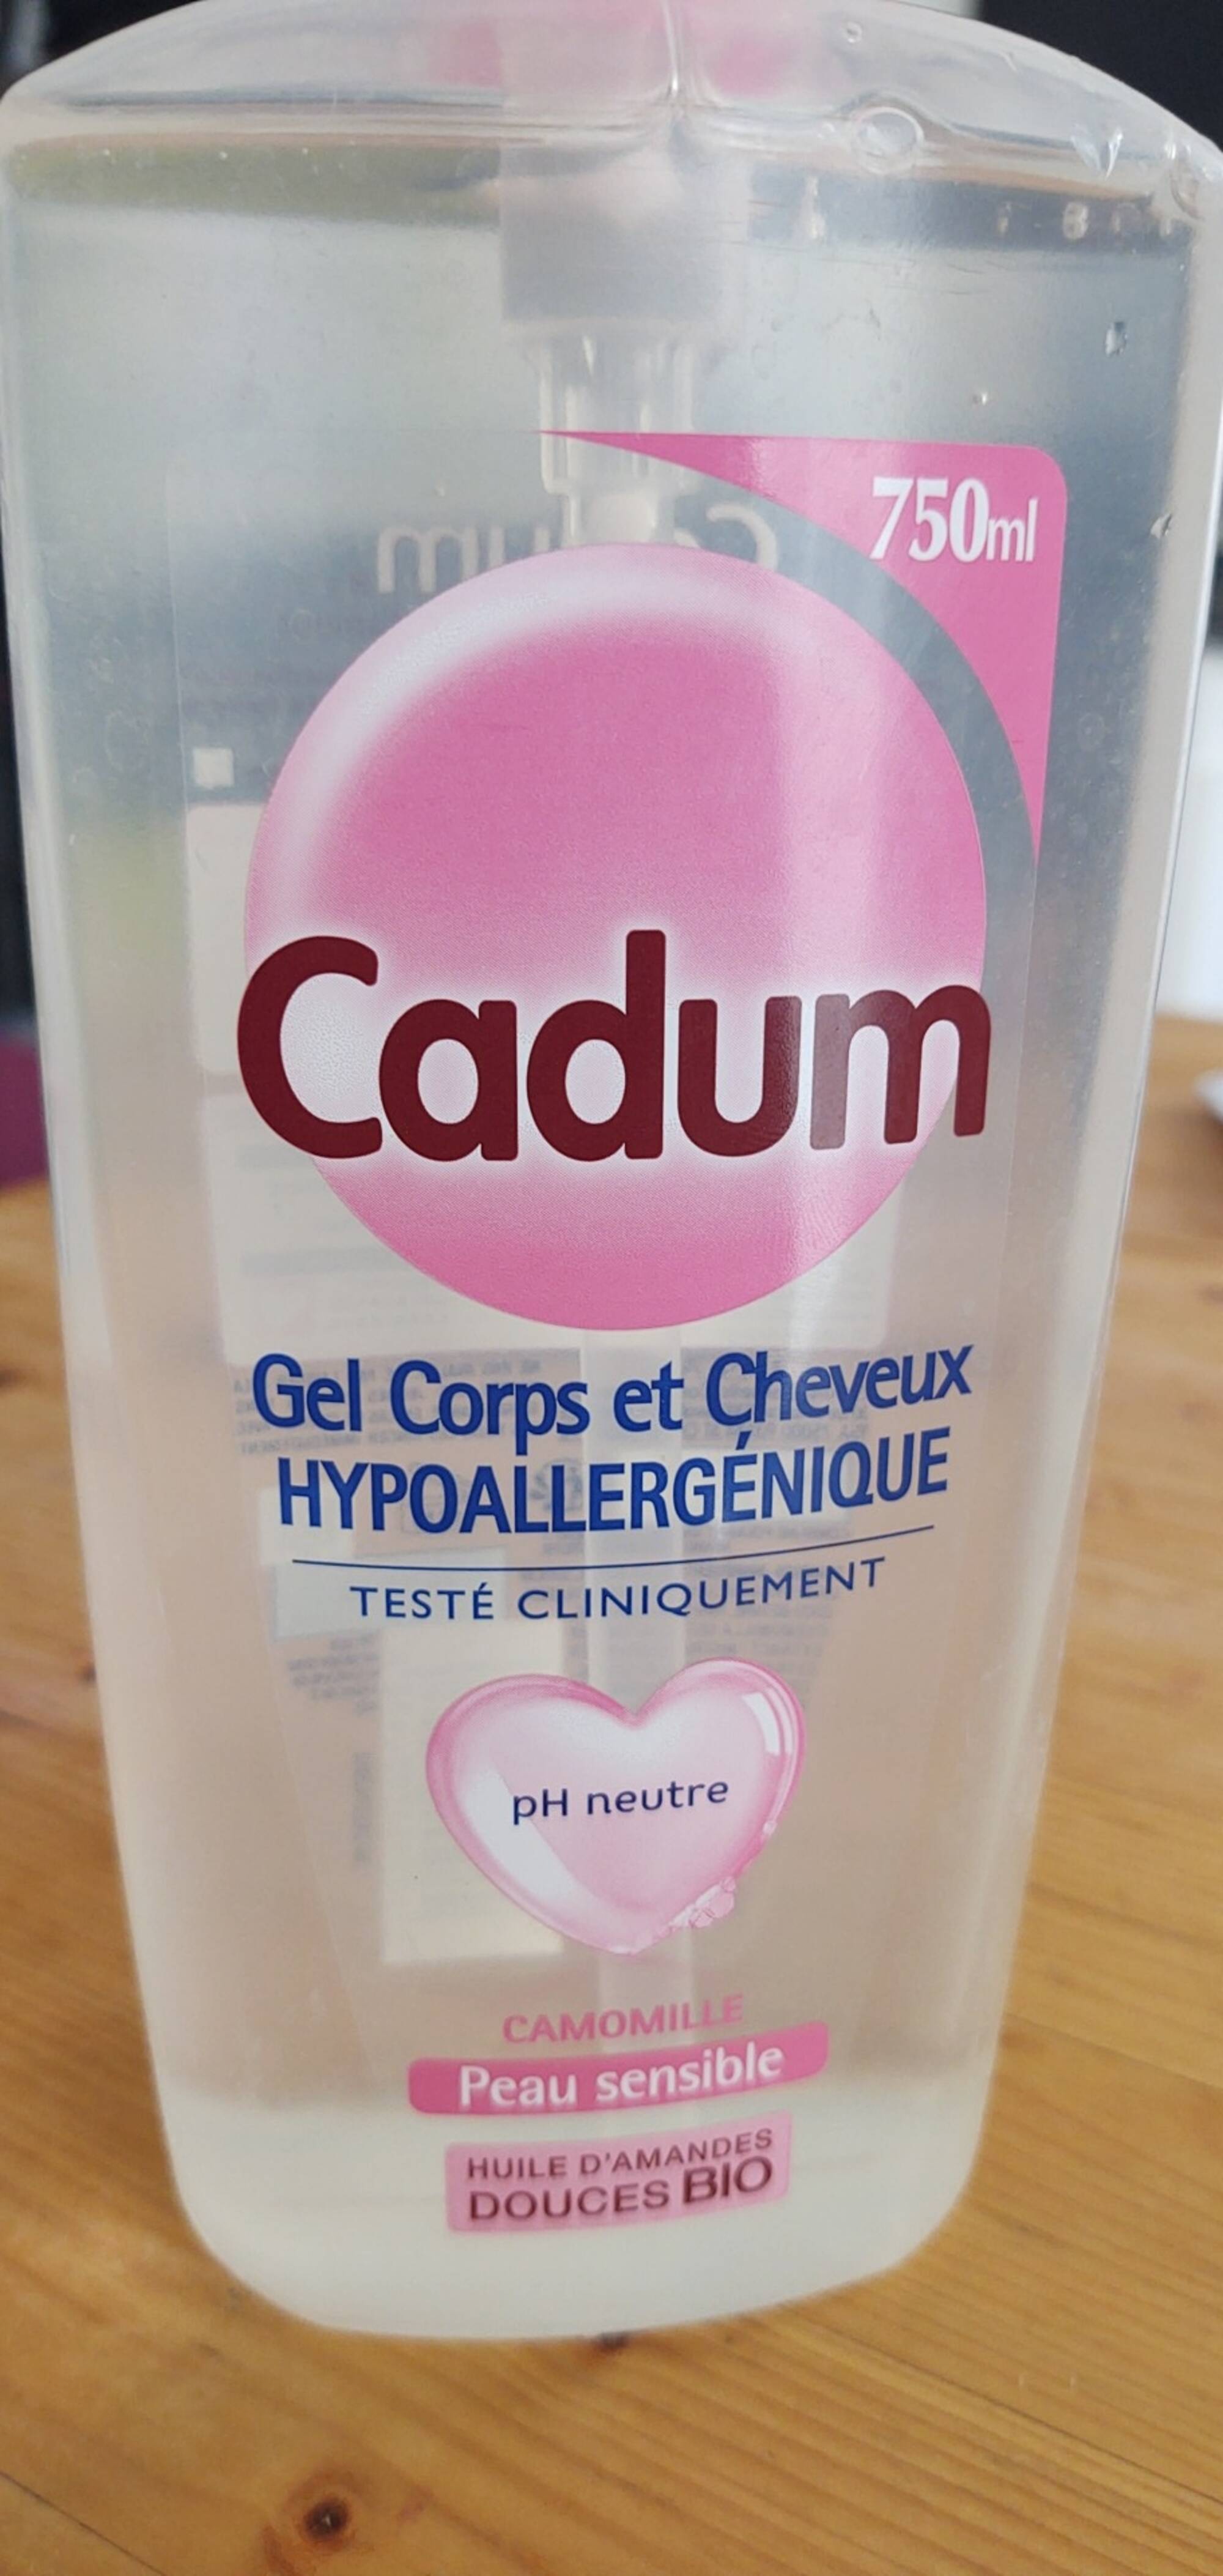 CADUM - Gels corps et Cheveux hypoallergénique Camomille